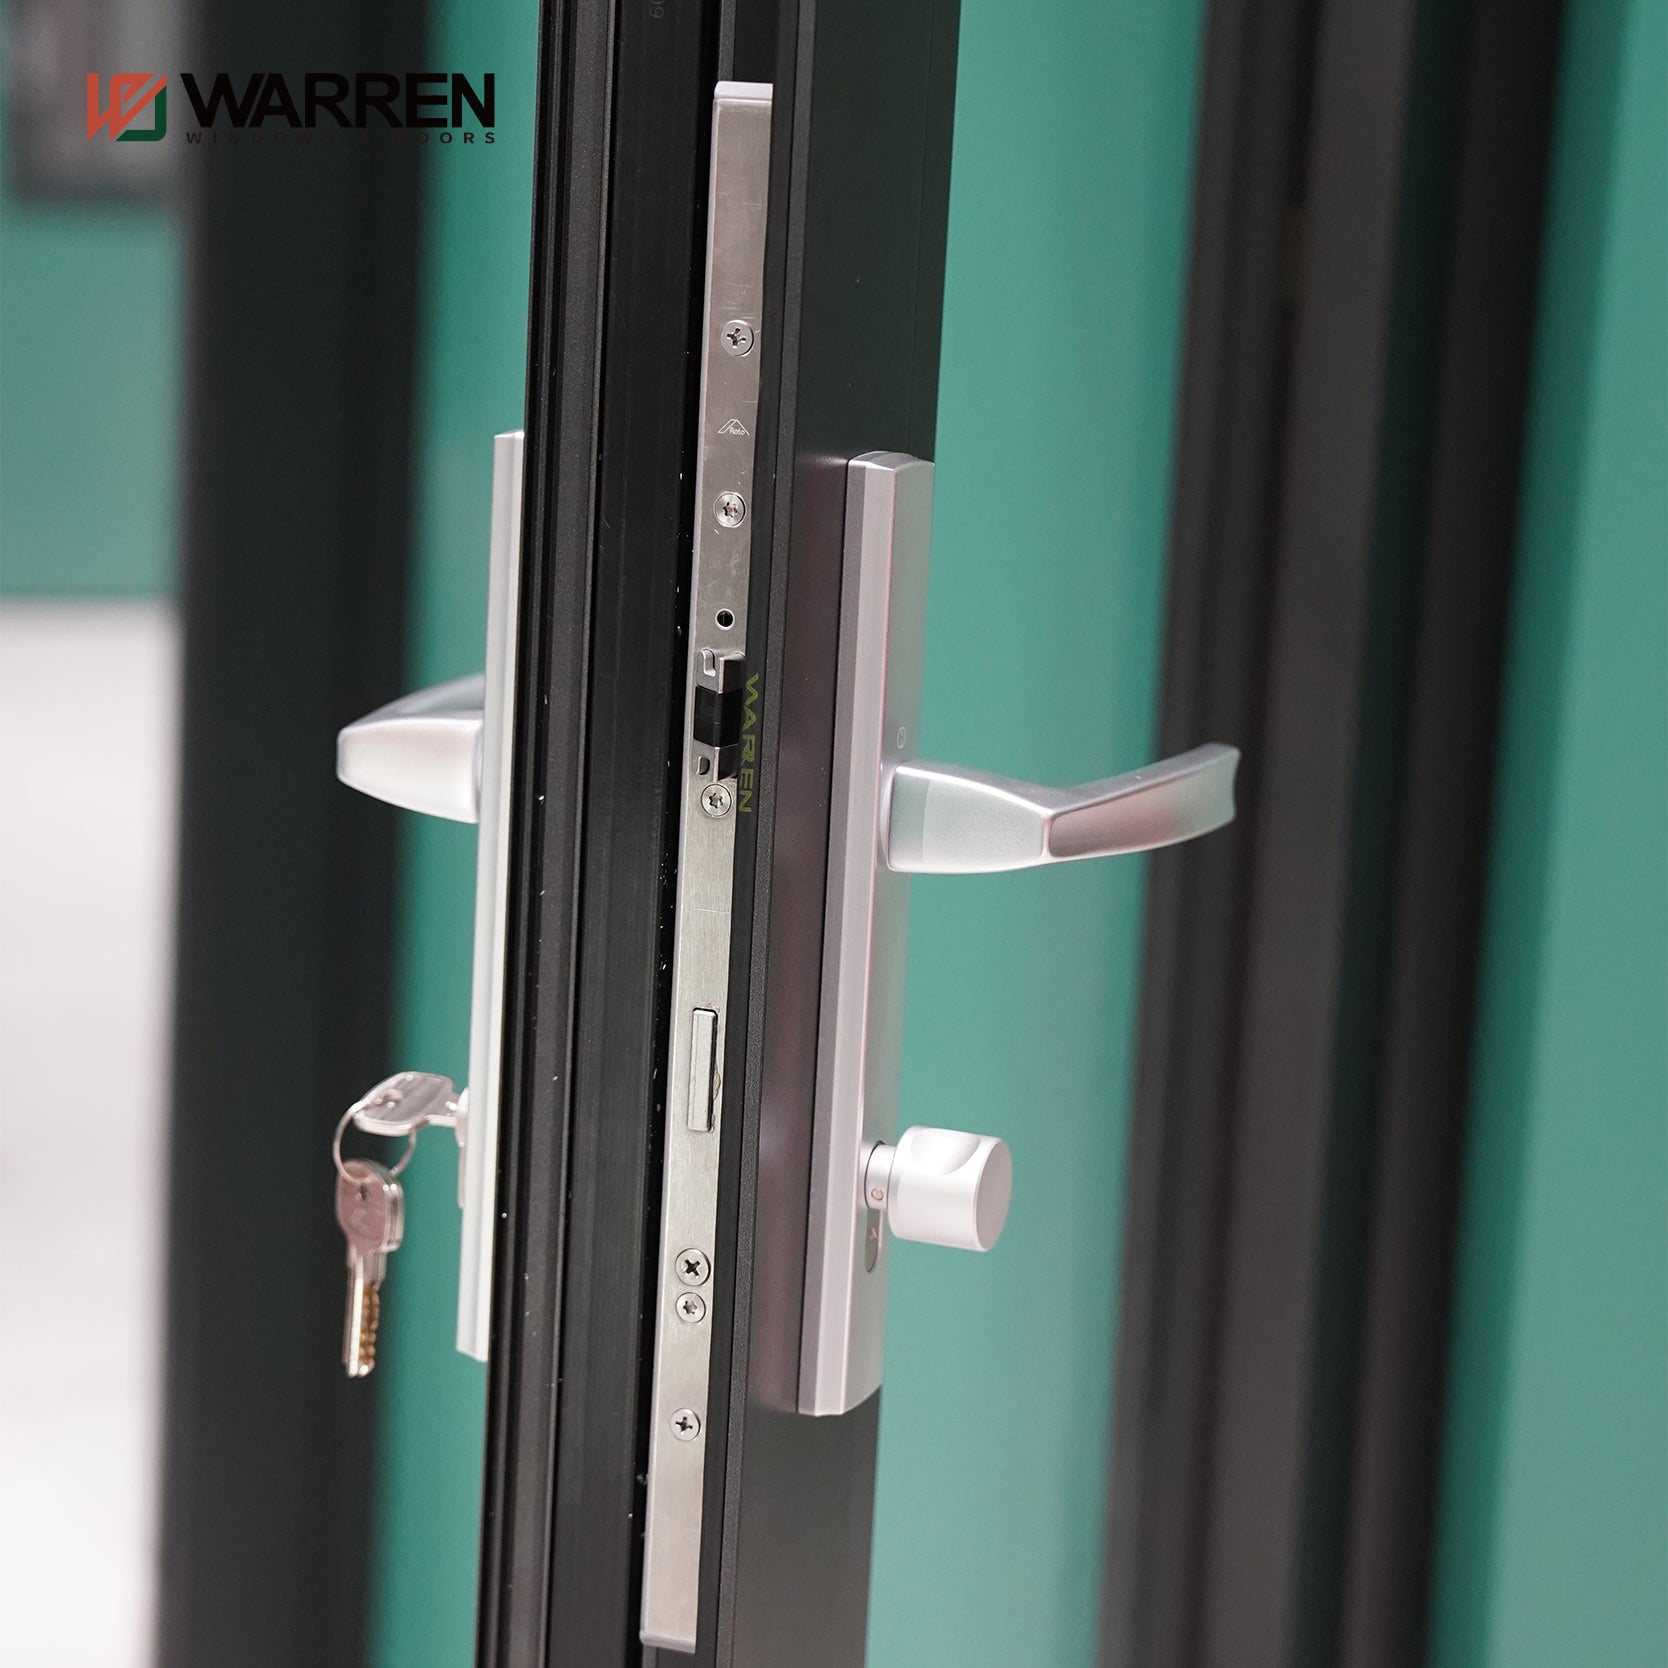 Warren Modern Latest Custom-Made Modern French Doors Interior Aluminum Frame Glass Doors For House